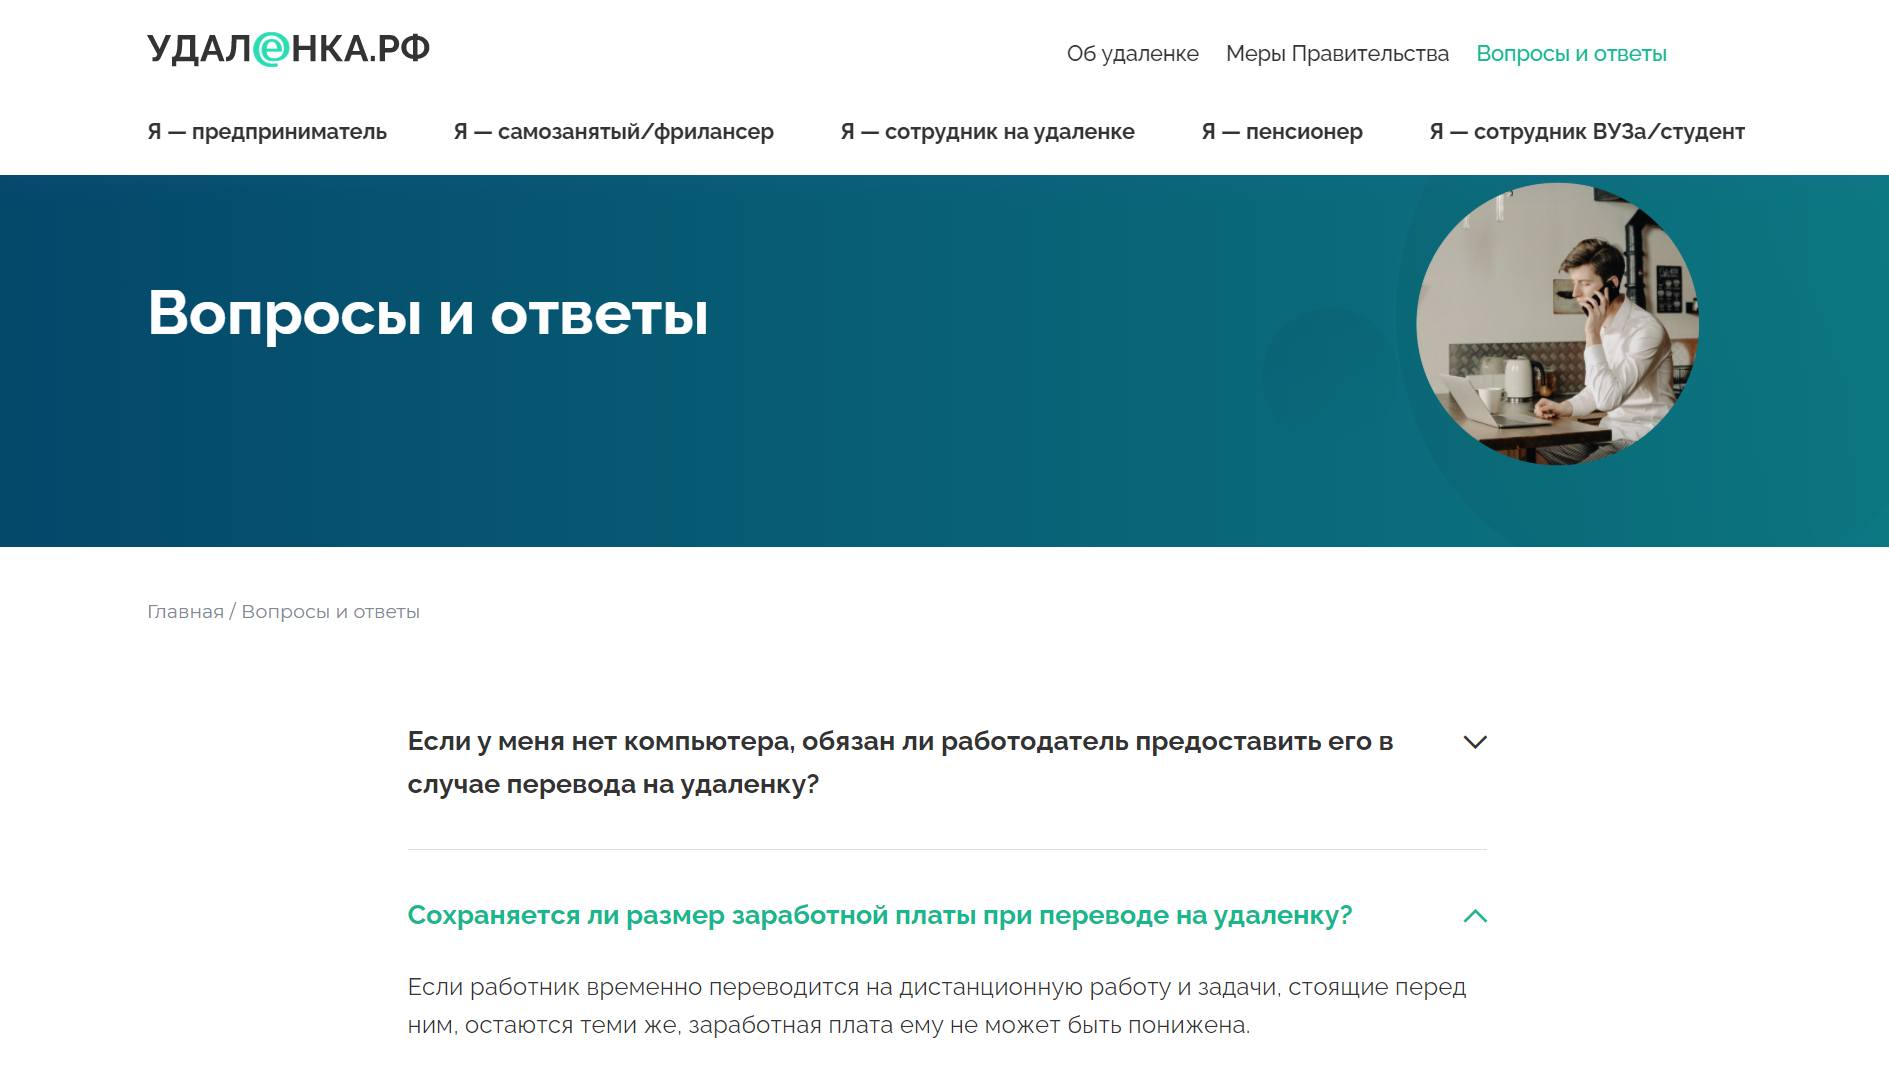 разработка официального интернет-ресурса по организации дистанционной работы - удалёнка.рф